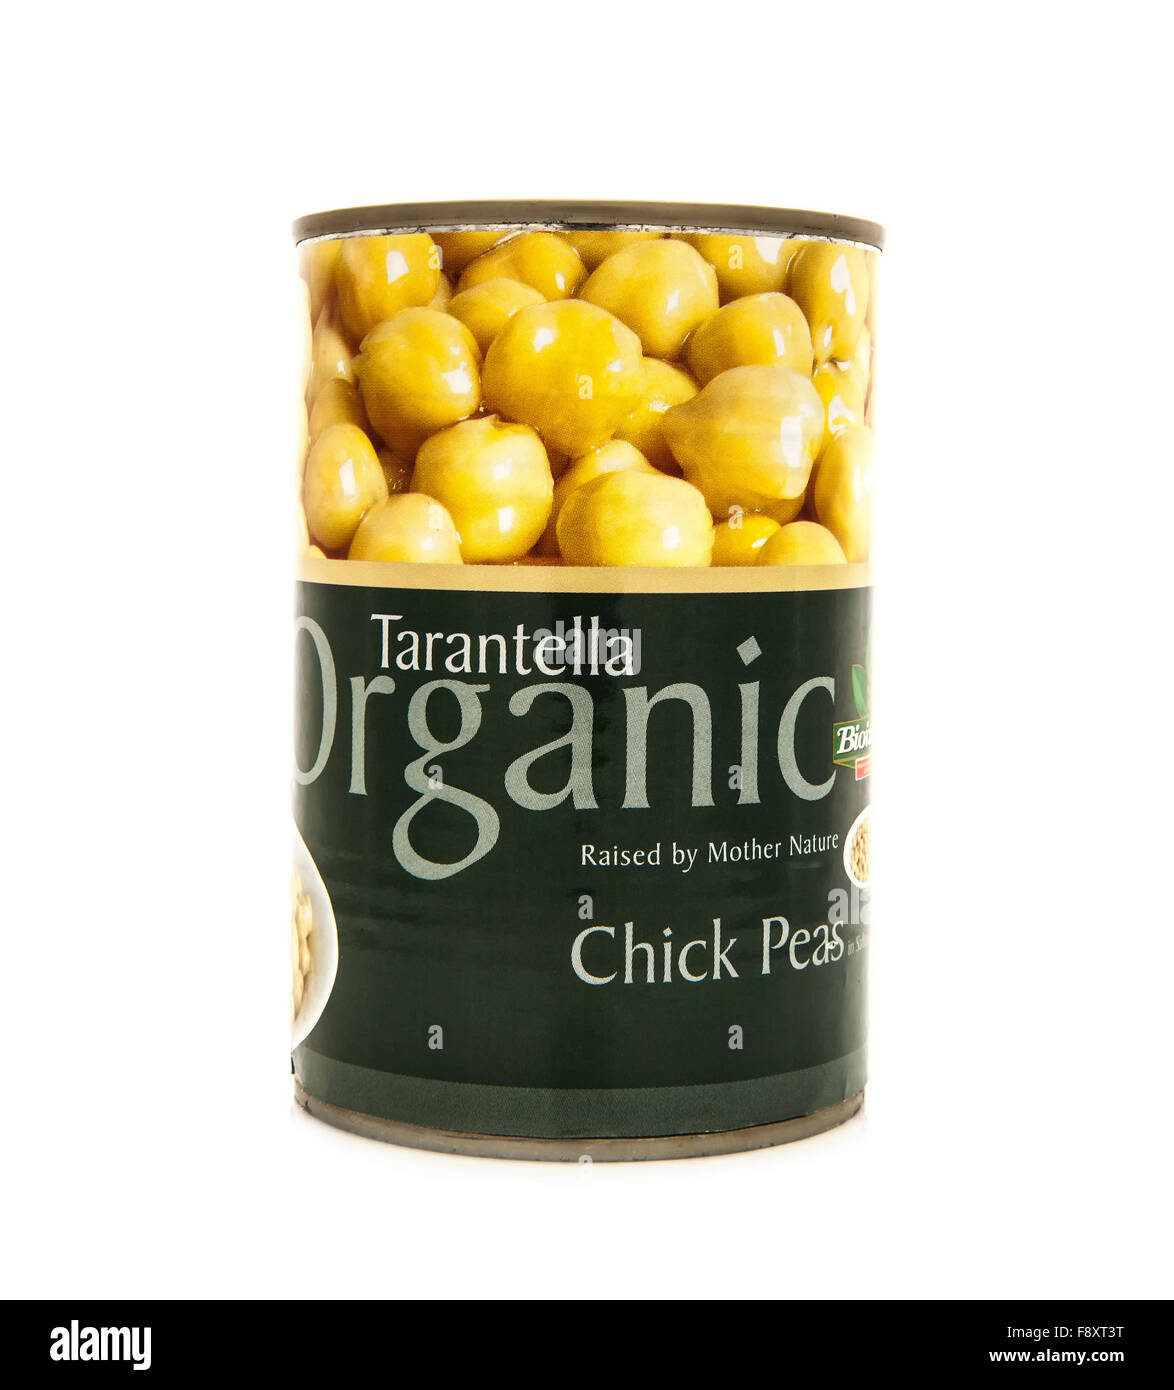 Tin of Tarantella Organic Chickpeas on a white background Stock Photo